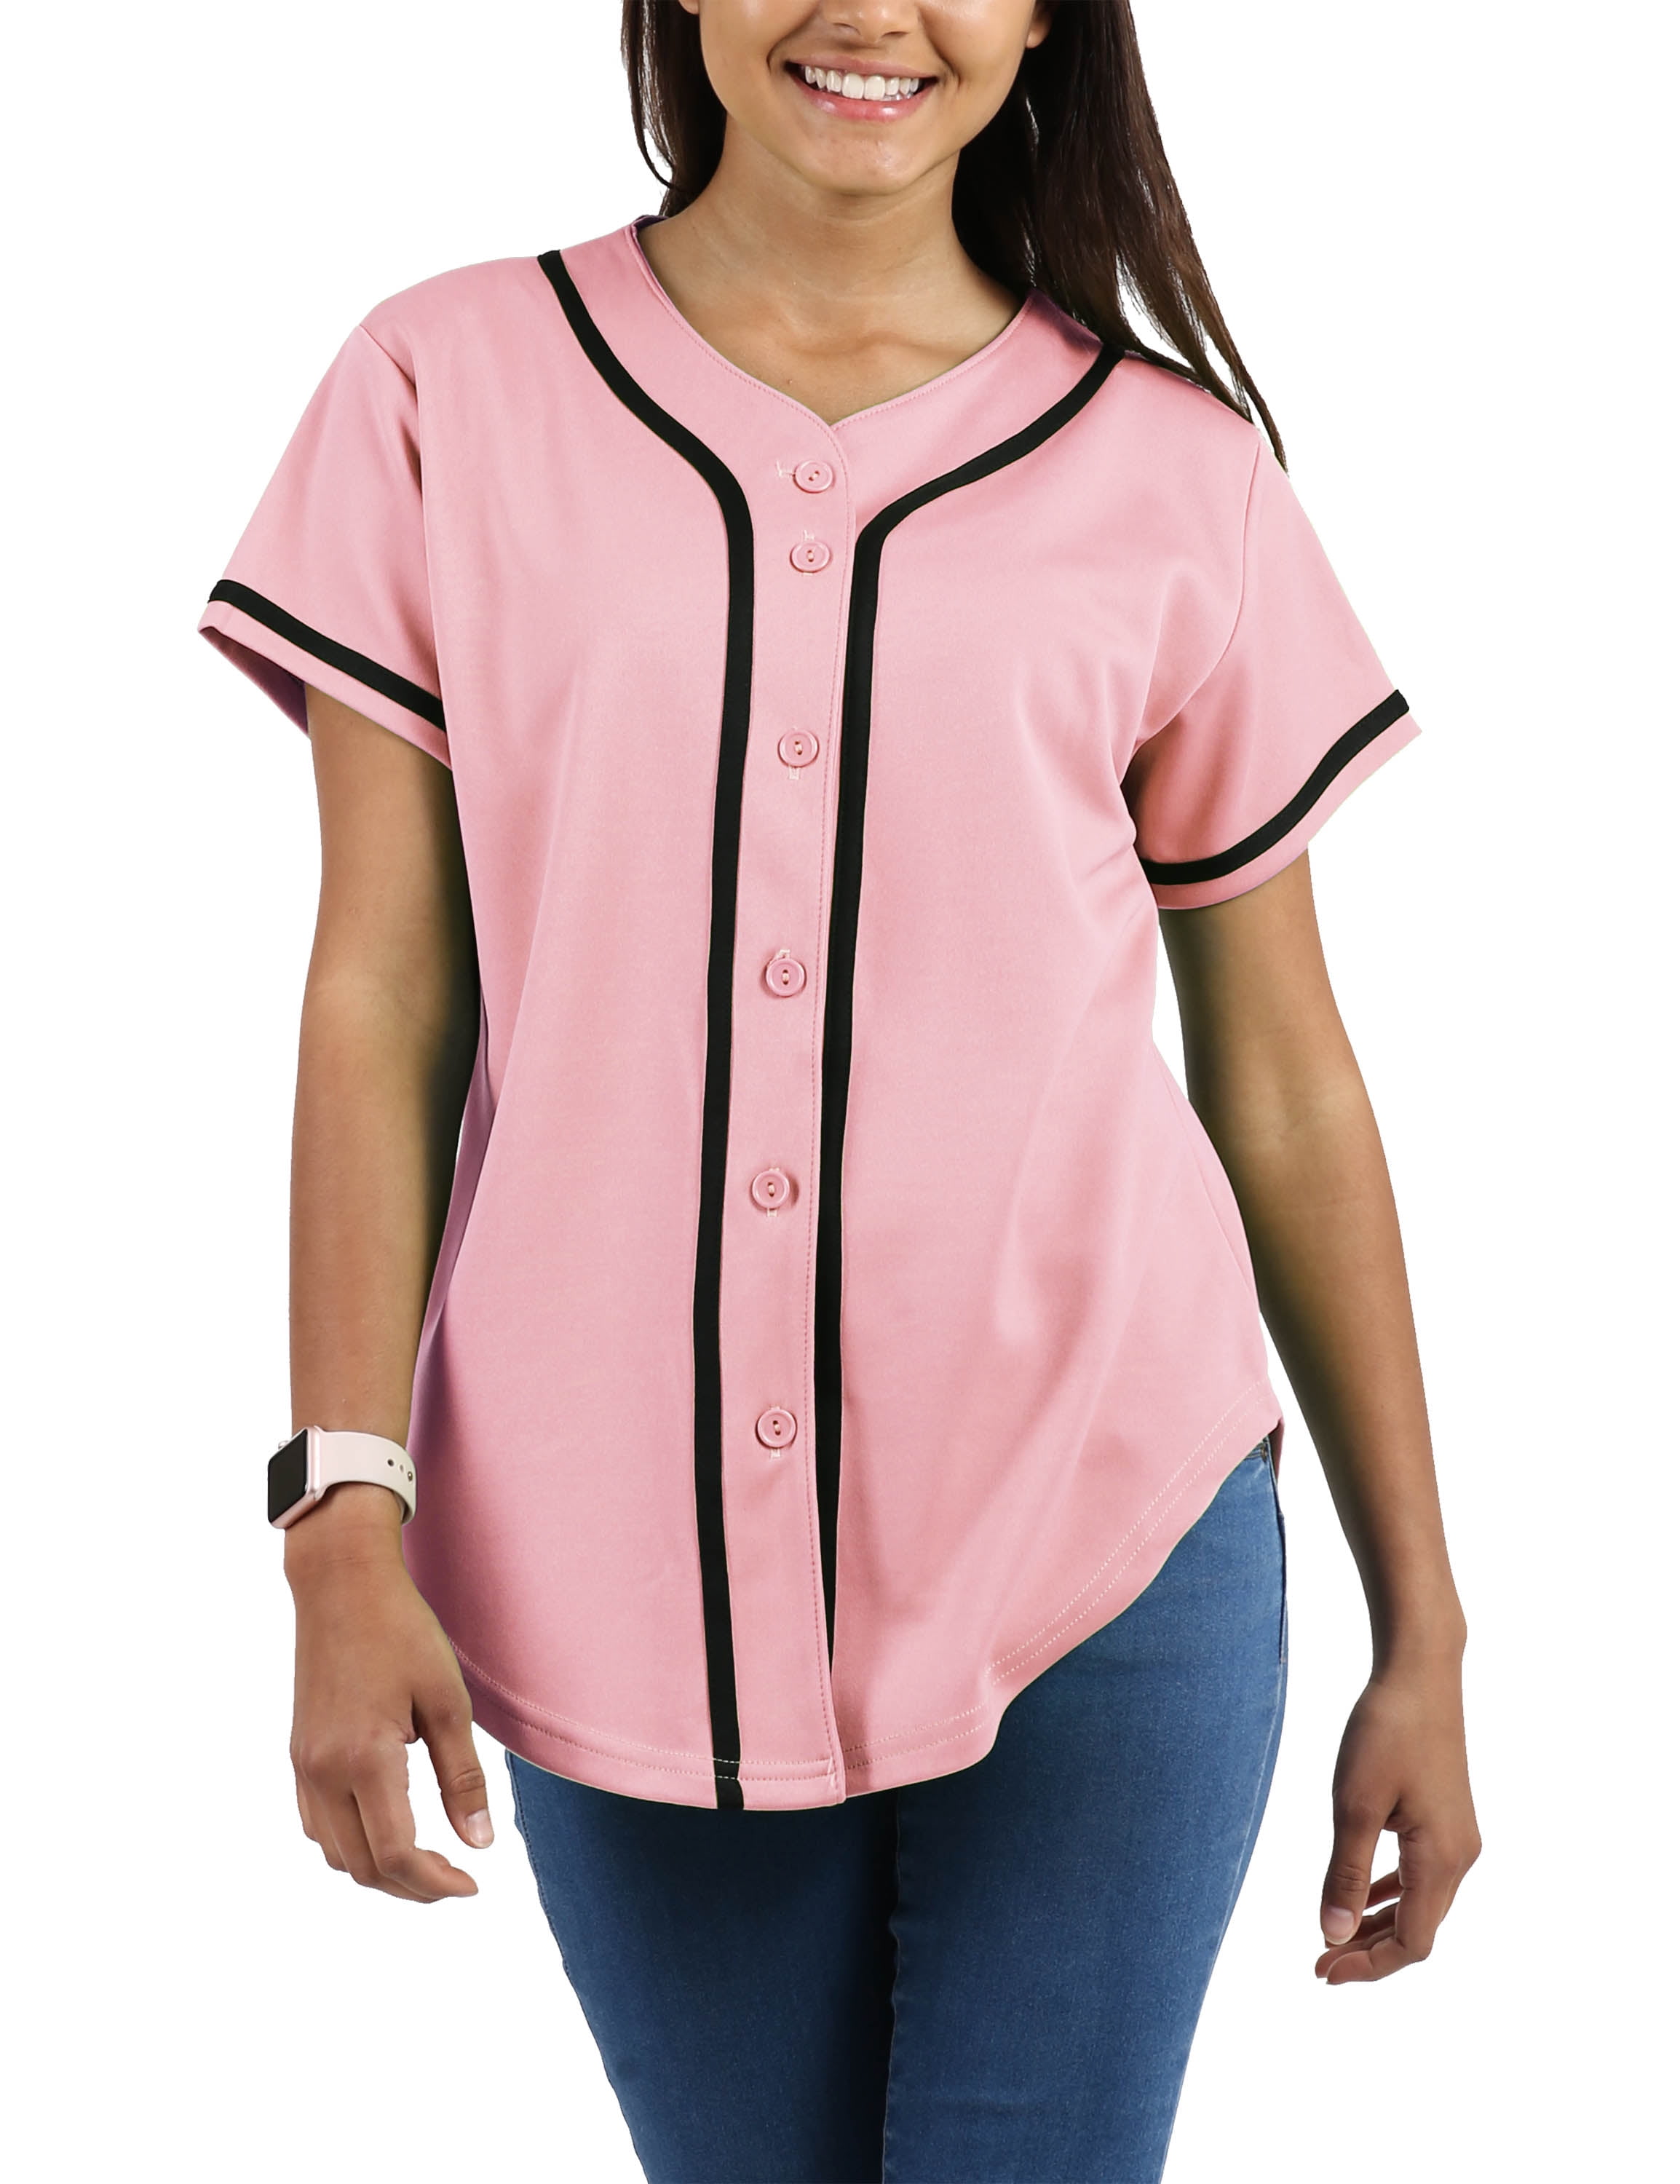 MOLPE Women Hip Hop Hipster Button Down Baseball Jersey Short Sleeve Active Shirts Plain Softball Uniform 